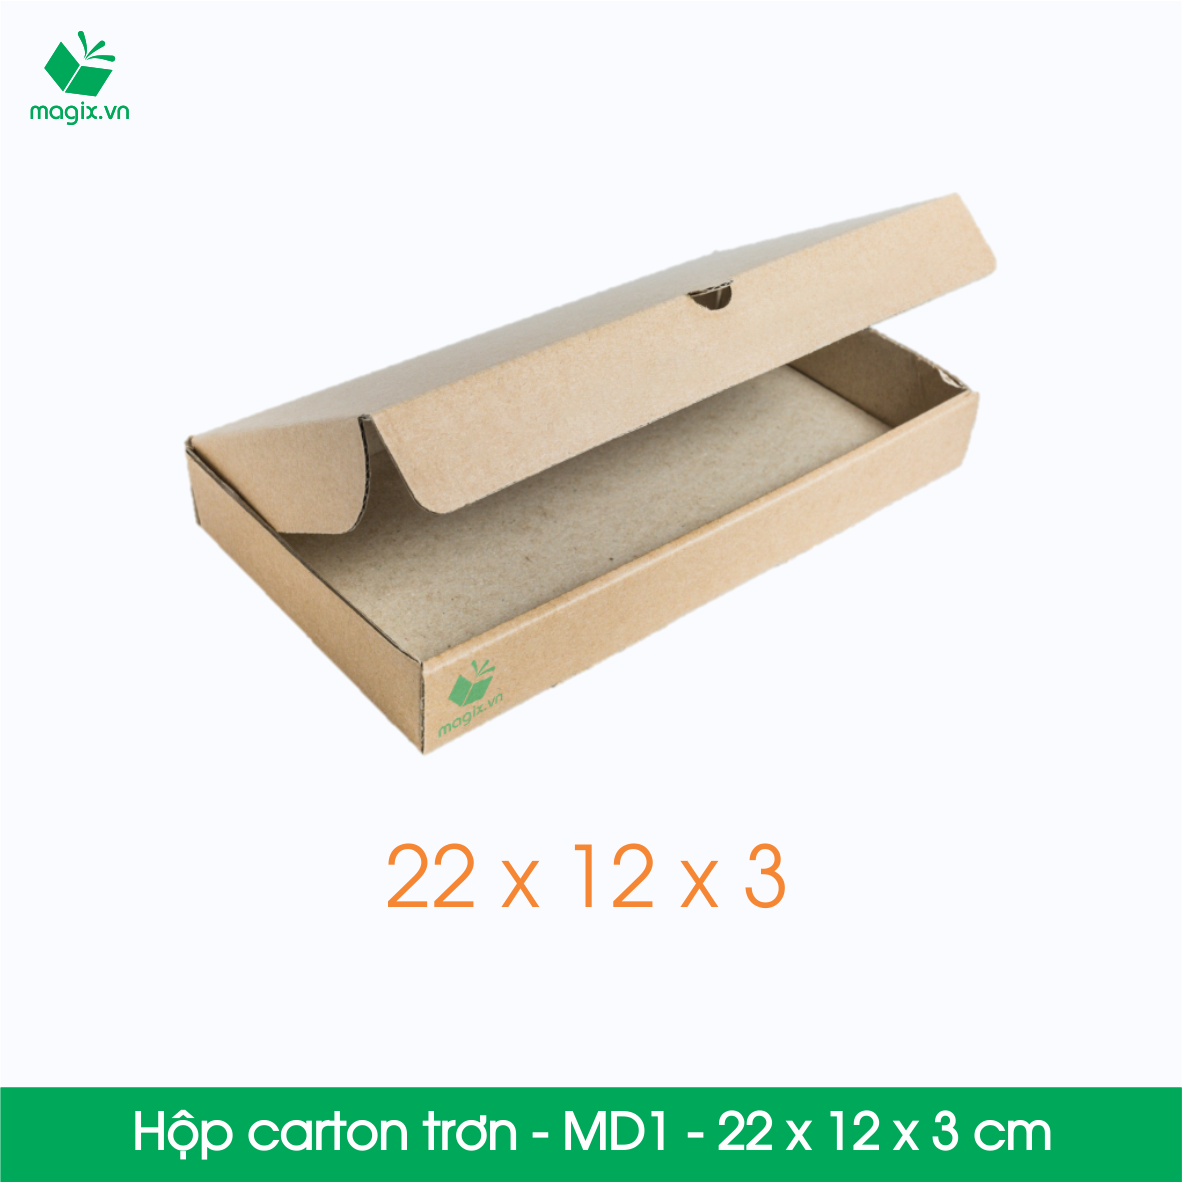 MD1 - 22x12x3 cm - 50 Thùng hộp carton trơn đóng hàng